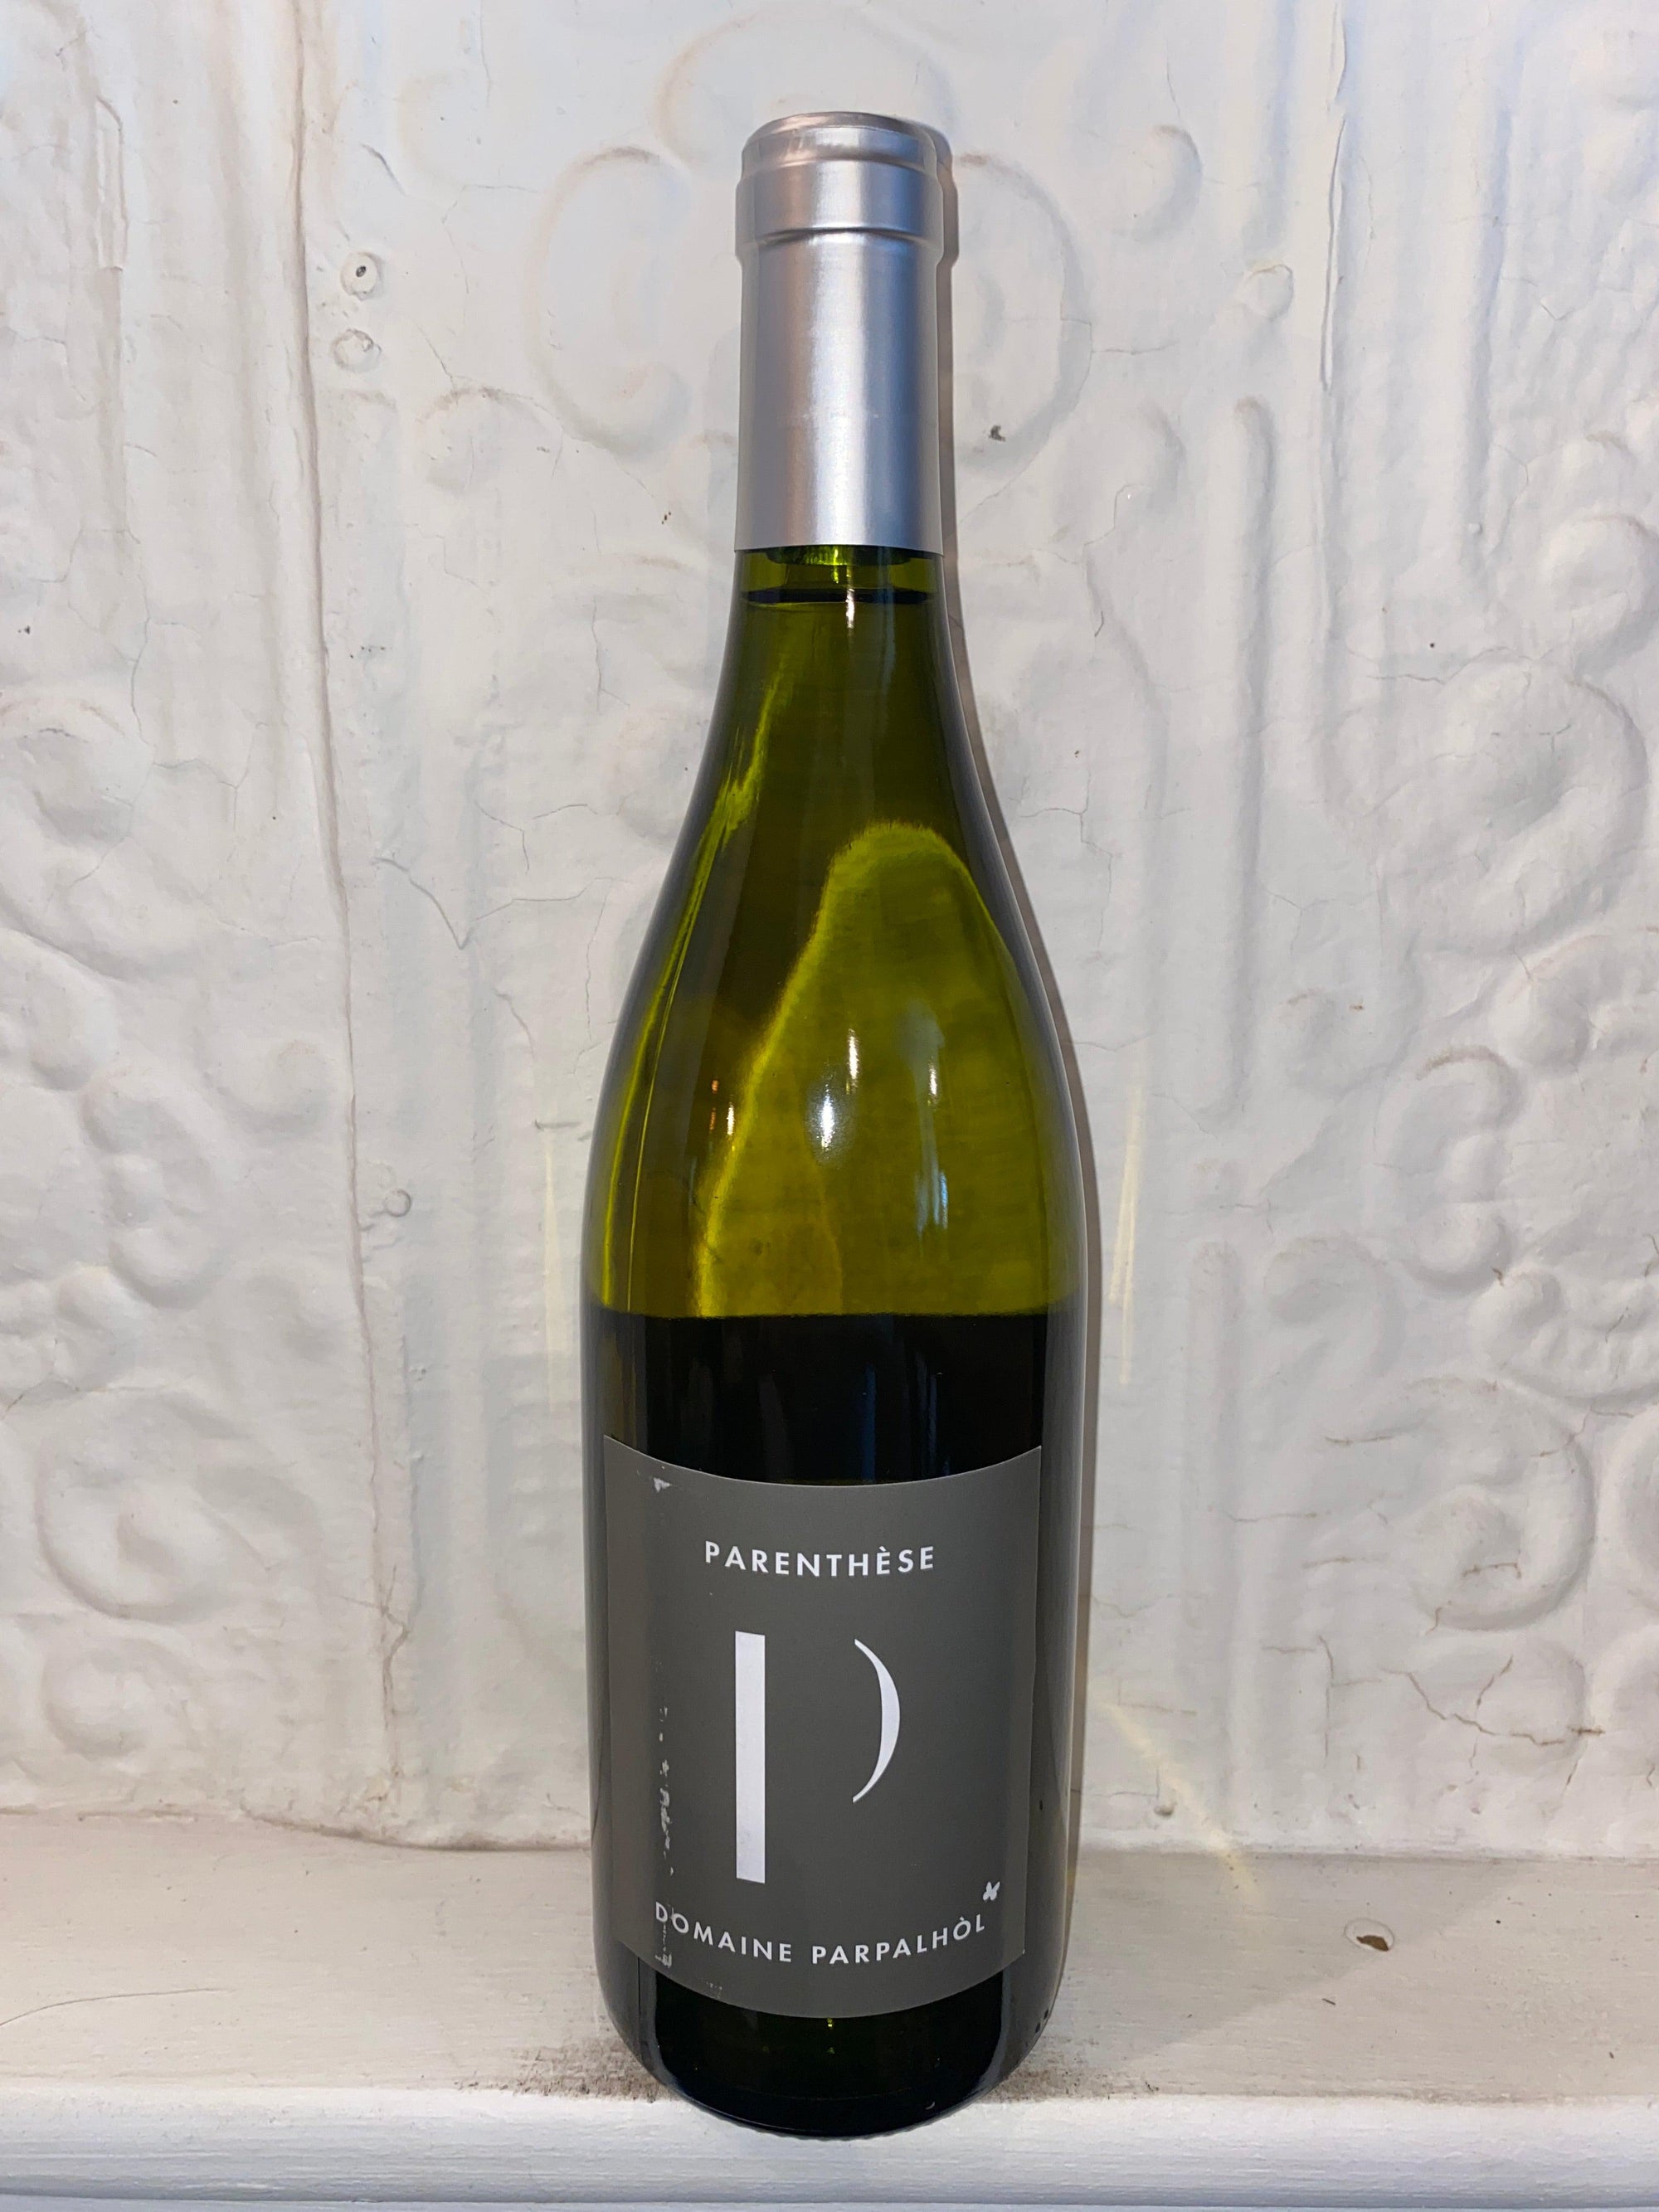 Chardonnay Blend "Paranthese Blanc", Domaine Parpalhol 2020 (Languedoc, France)-Bibber & Bell